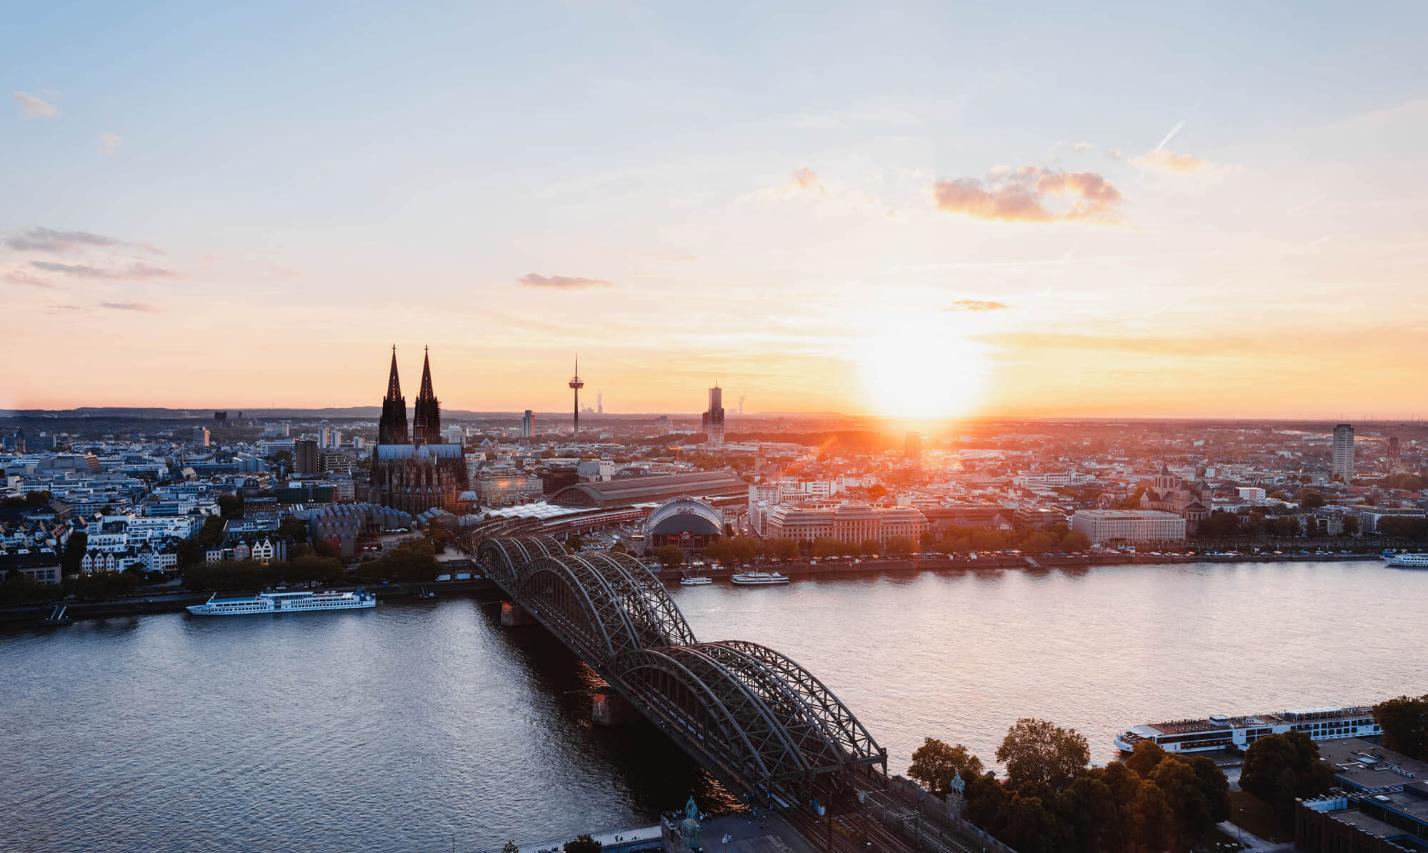 Sonnenuntergang fotografiert von der linken Rheinseite. Man sieht den Kölner Dom und die Hohenzollernbrücke.